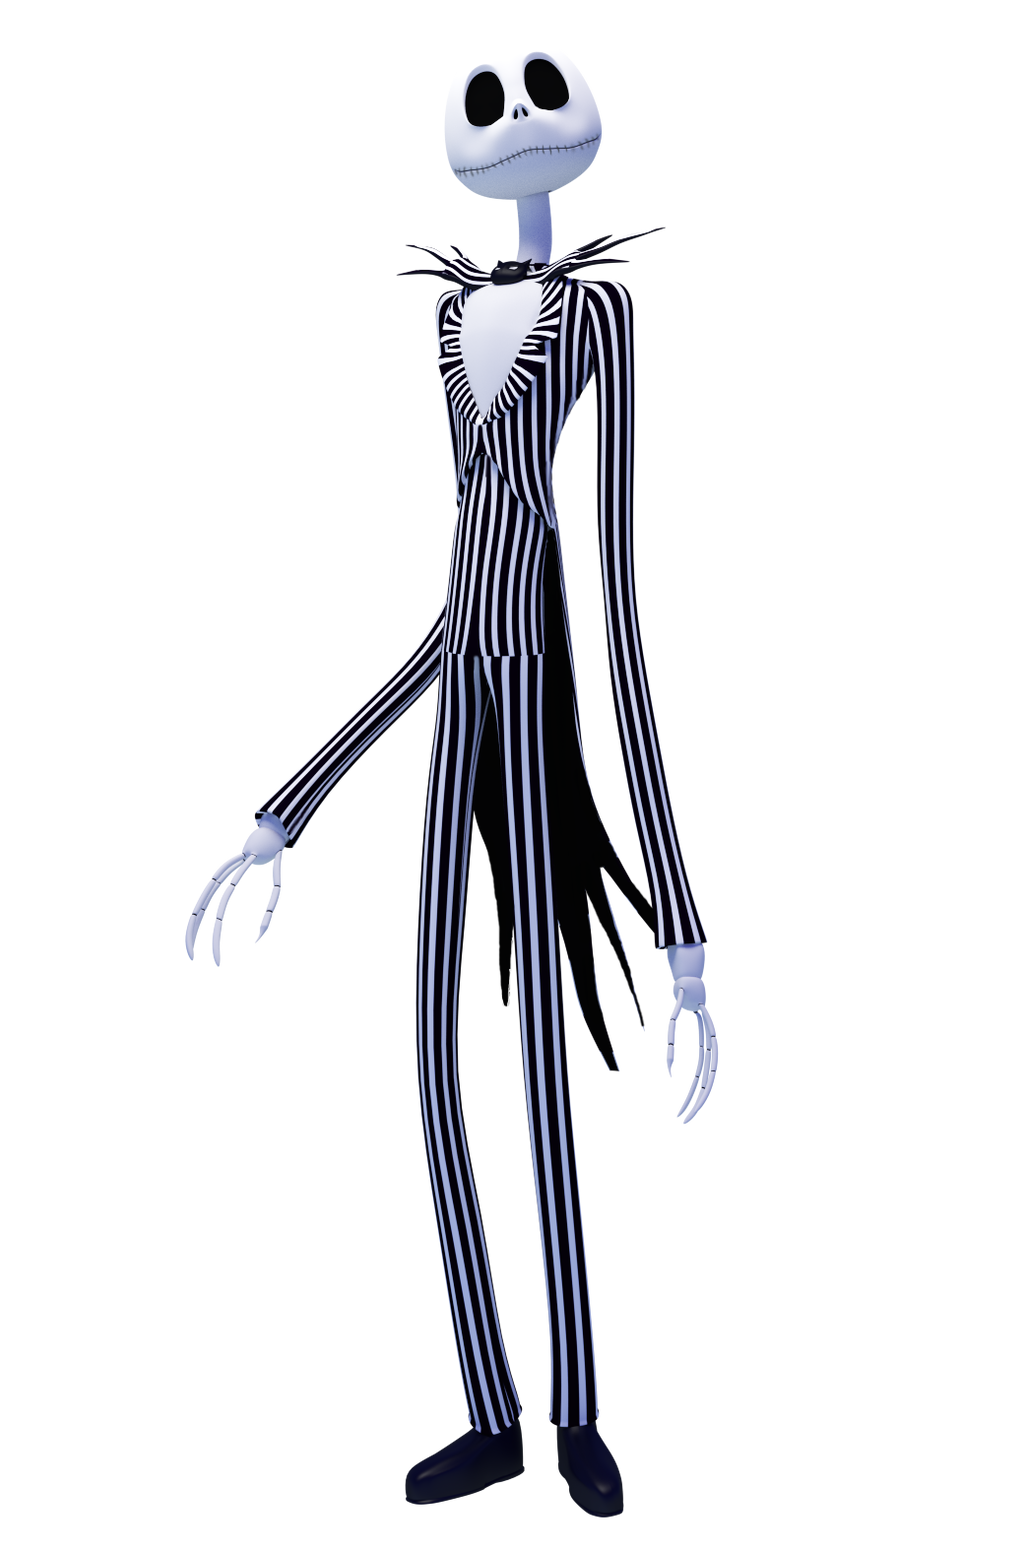 Jack Skeleton PNG HD Image